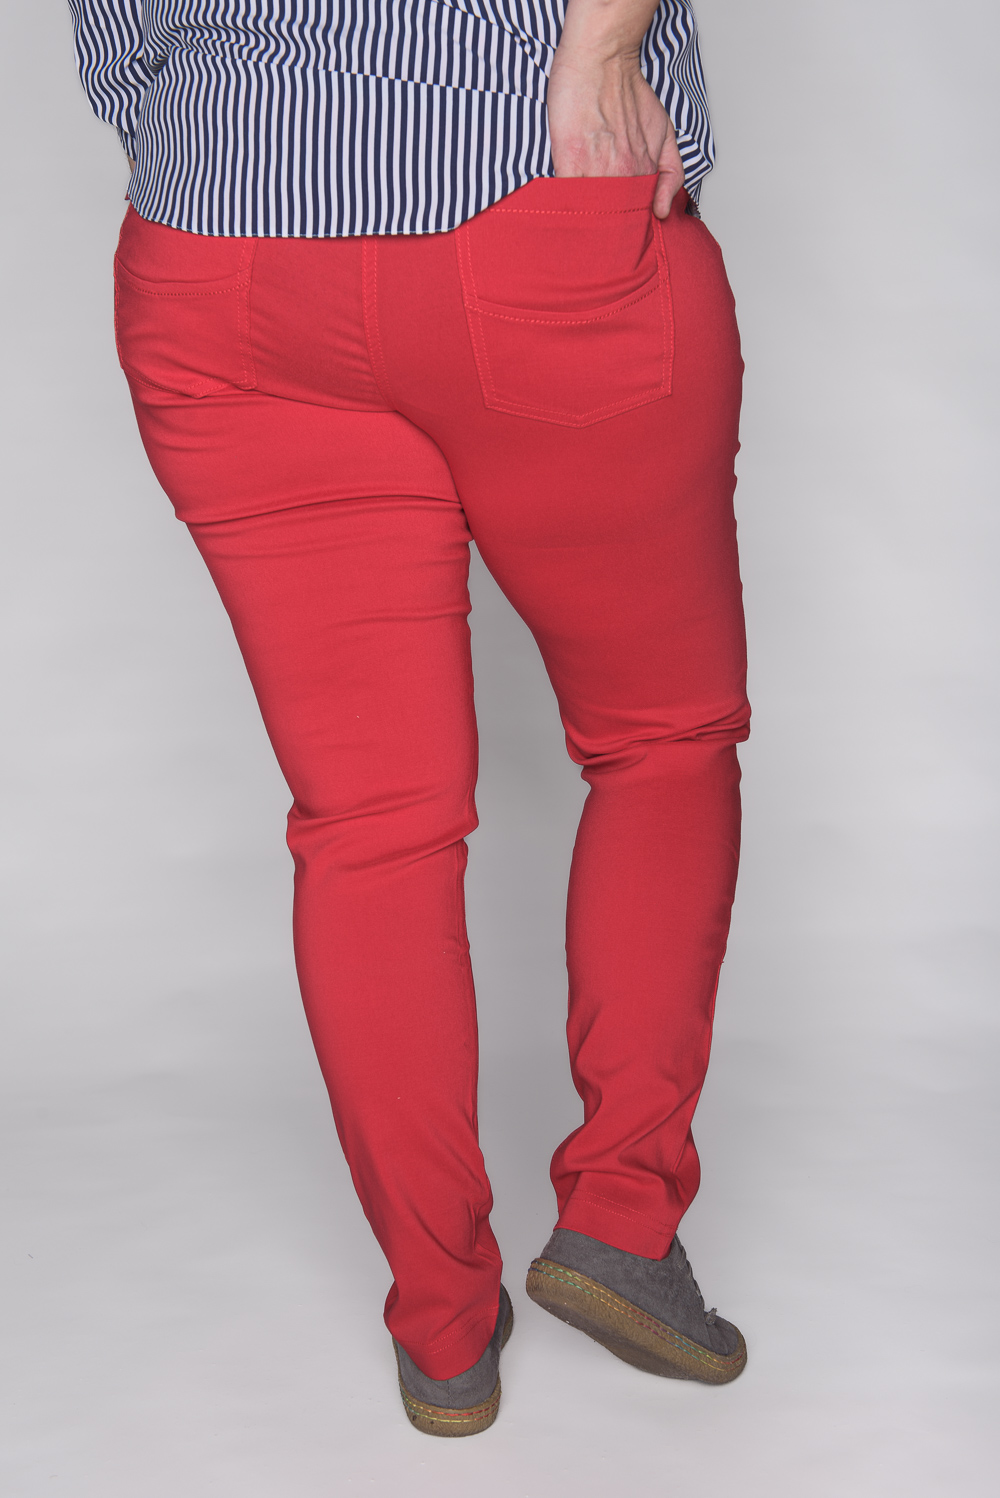 Spodnie CEVLAR zwężona nogawka kolor czerwony